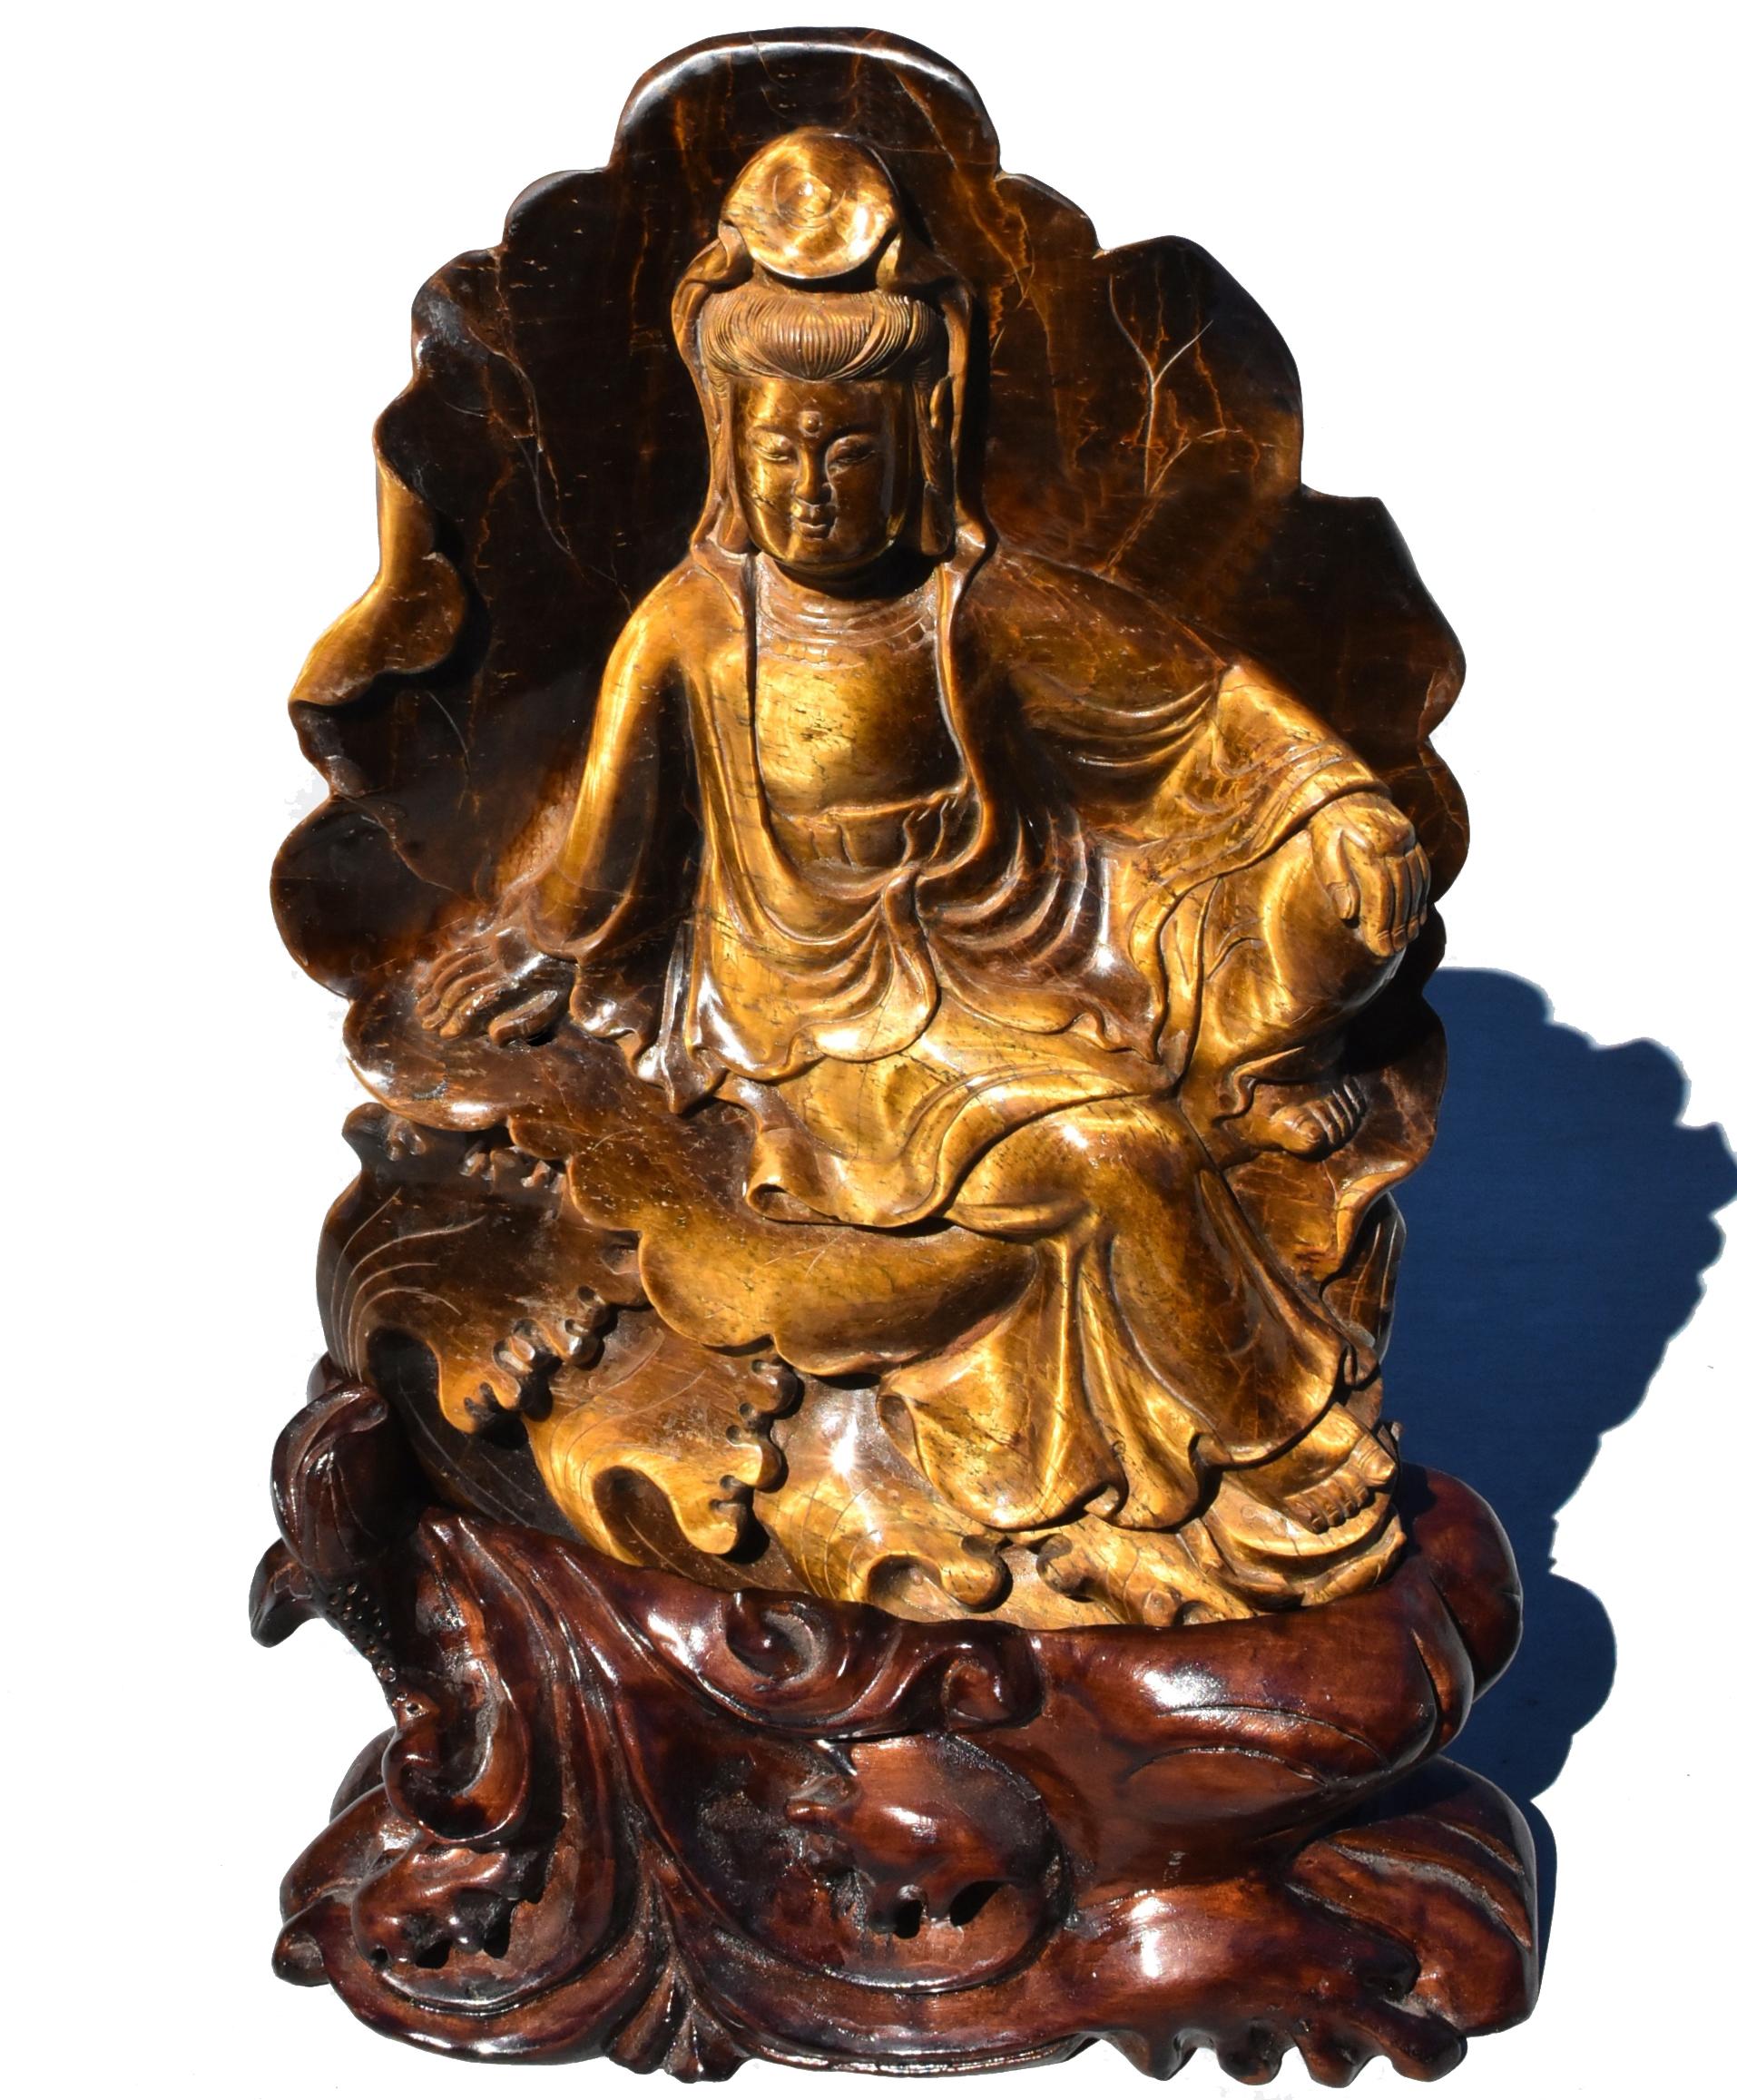 Eine herrliche natürliche Tigerauge-Skulptur, die den mitfühlenden Bodhisattva Wassermond Guan Yin, Avalokiteshvara, darstellt. Avalokiteshvara sitzt auf dem Rücken eines Lotusblatts und auf der Spitze von Wasserwellen in rajalilasana, der 